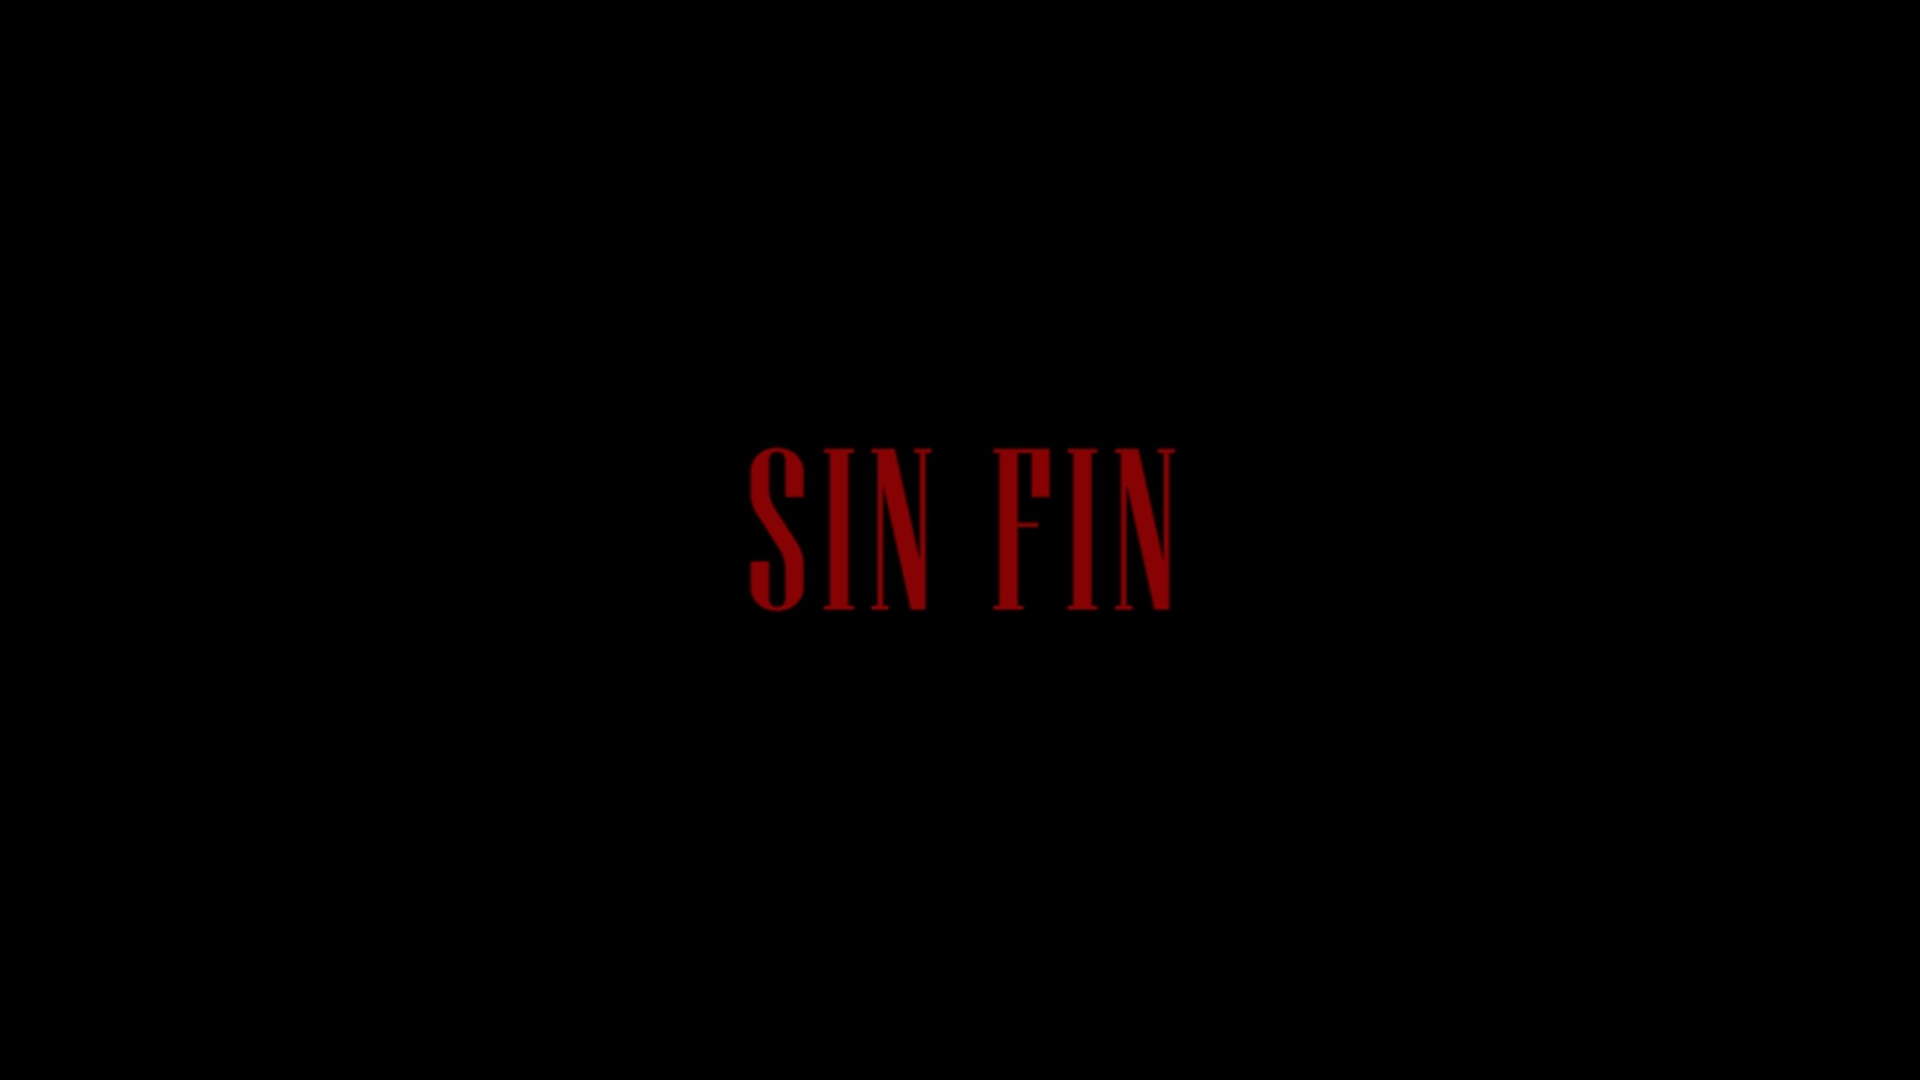 SIN FIN